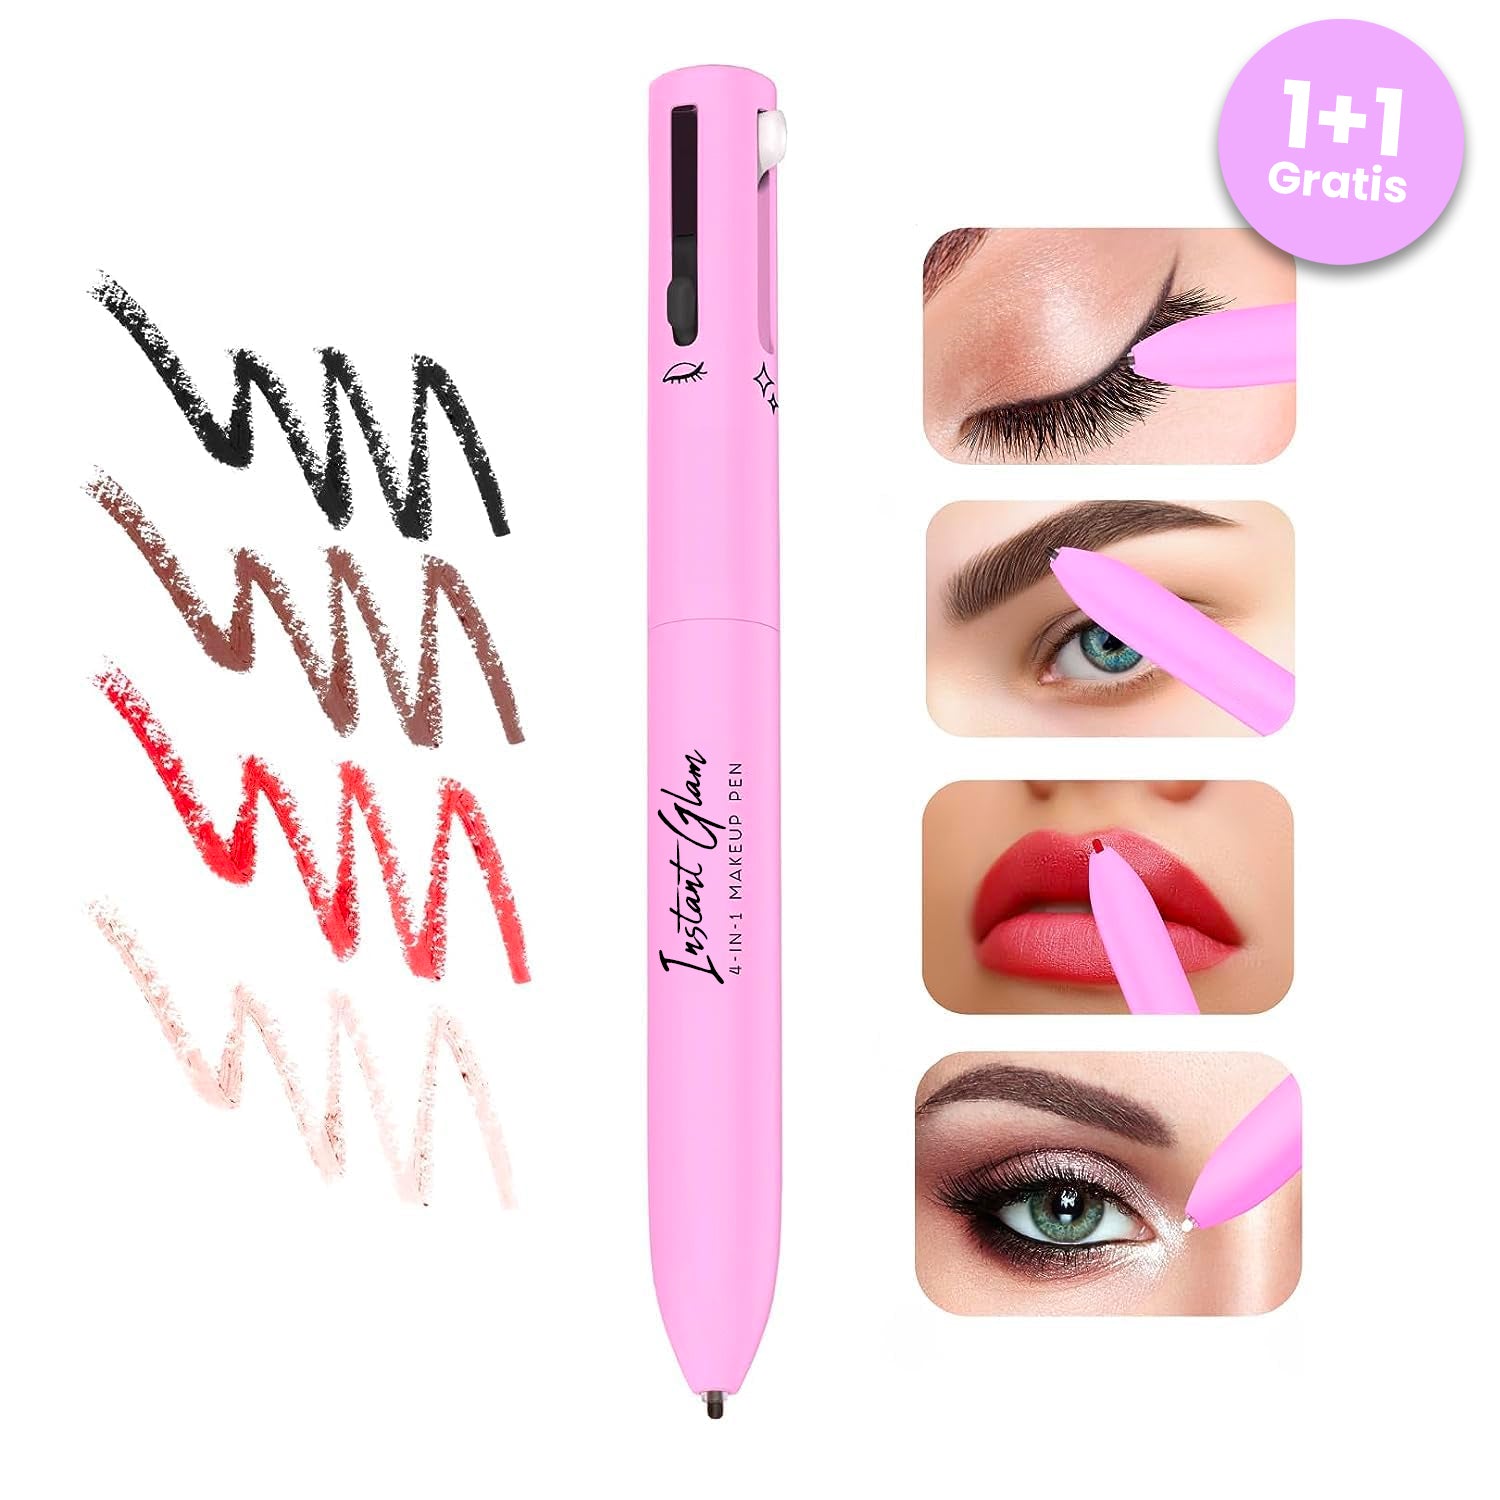 Instant Glam™ Glowpen 4-in-1 Makeup Pen